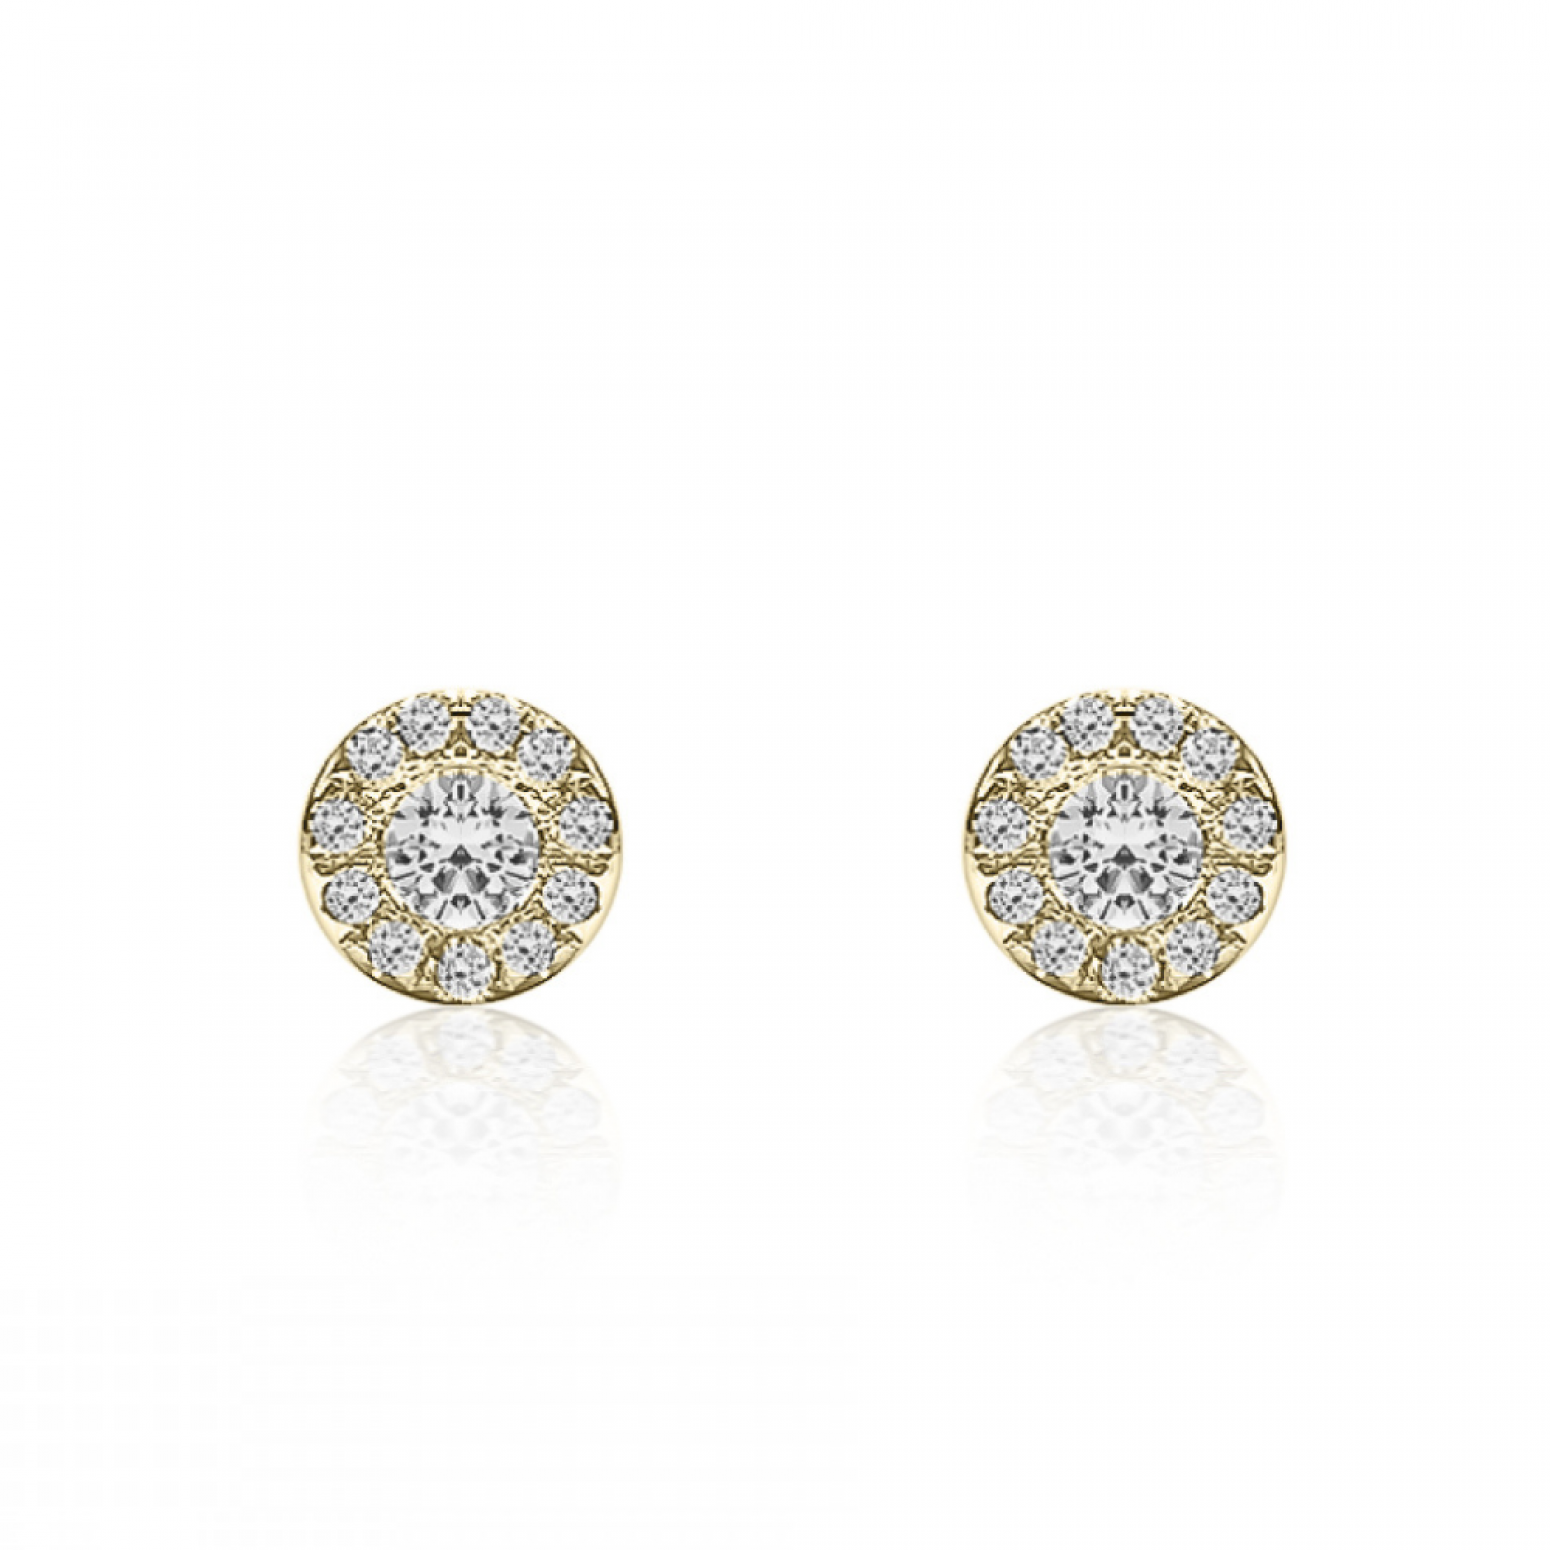 Πολύπετρα σκουλαρίκια ροζέτες Κ18 χρυσό με διαμάντια 0.15ct, VS1, G, sk4012 ΣΚΟΥΛΑΡΙΚΙΑ Κοσμηματα - chrilia.gr